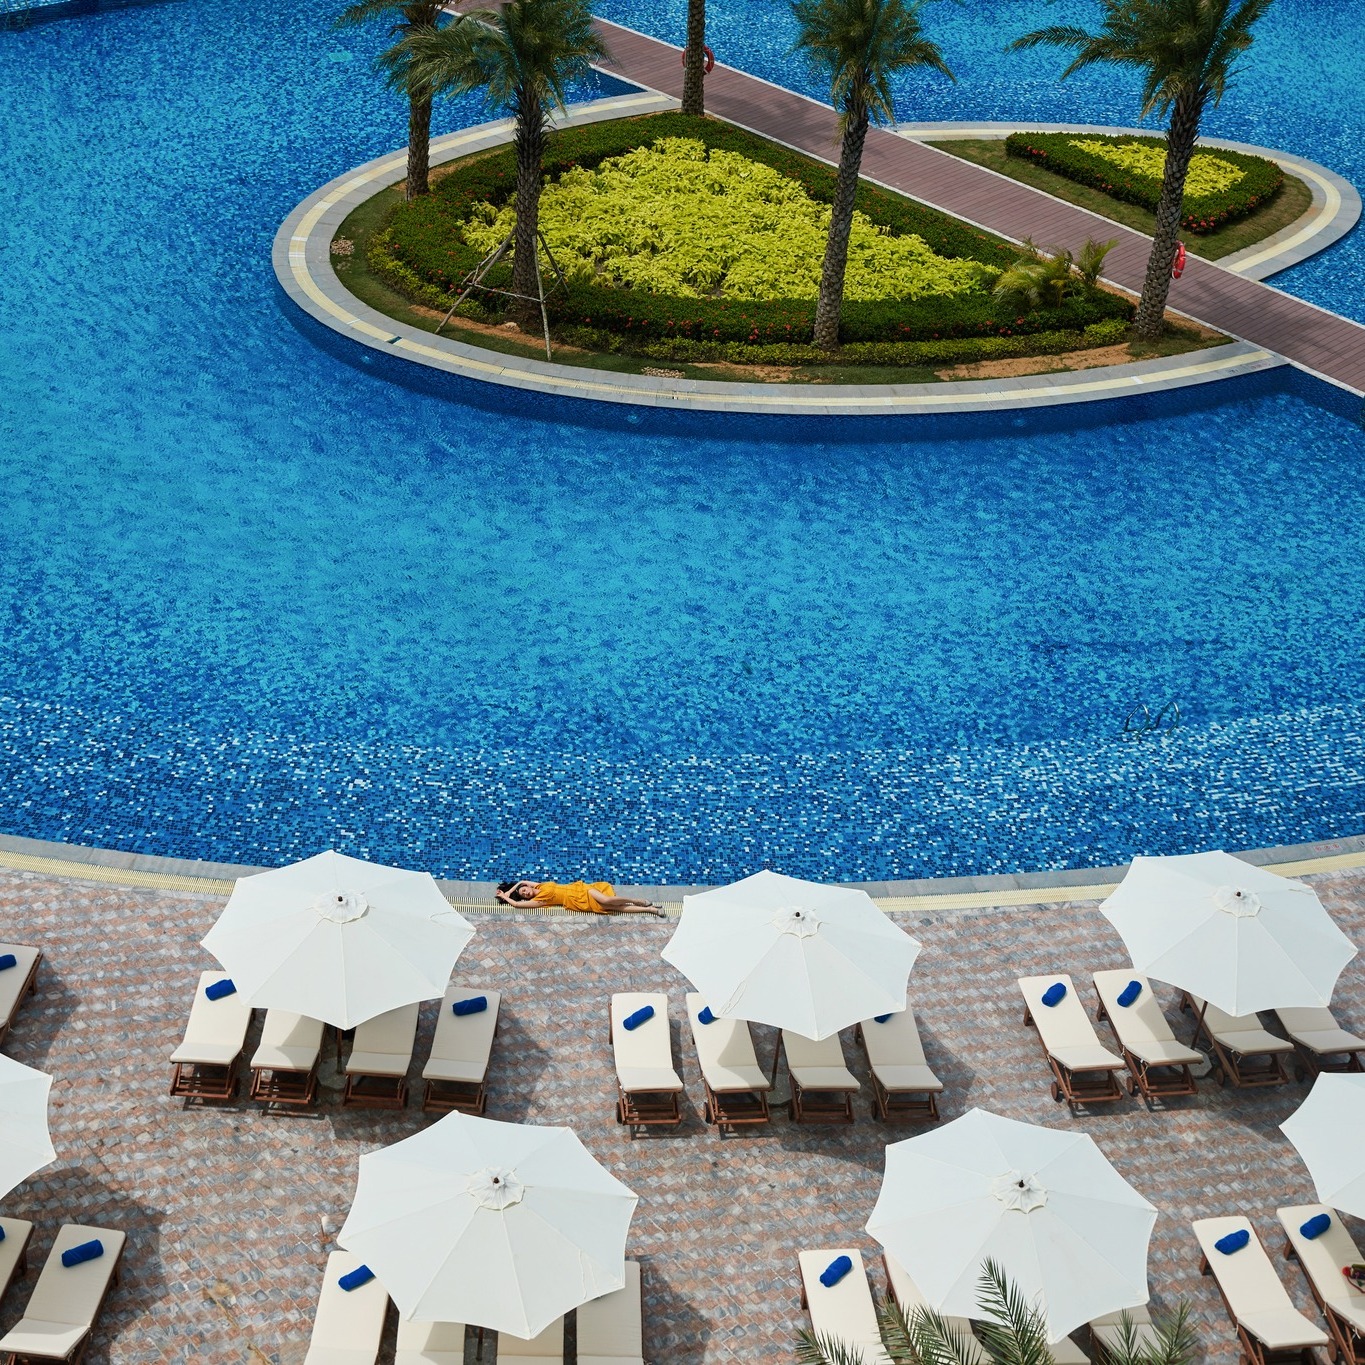 Radisson Blu Resort Phú Quốc